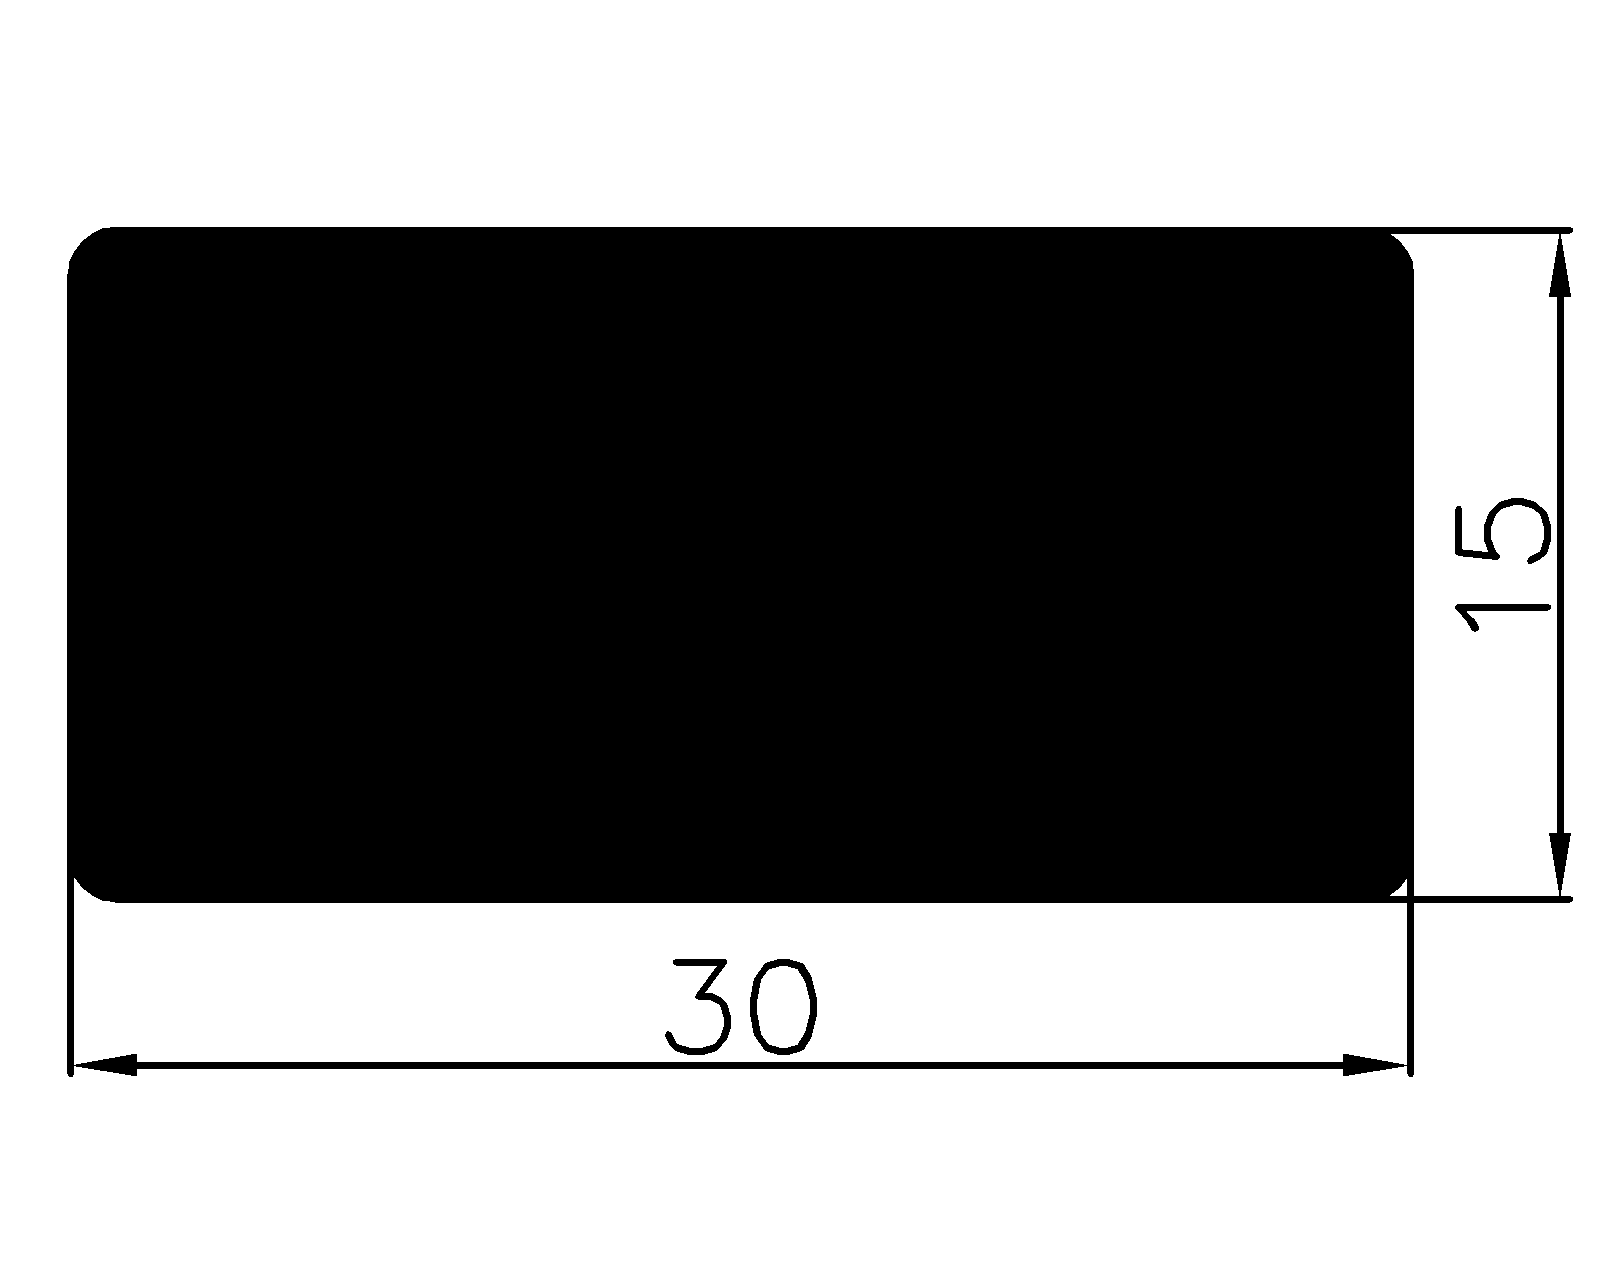 13870350KG - rubber profiles - Square profiles